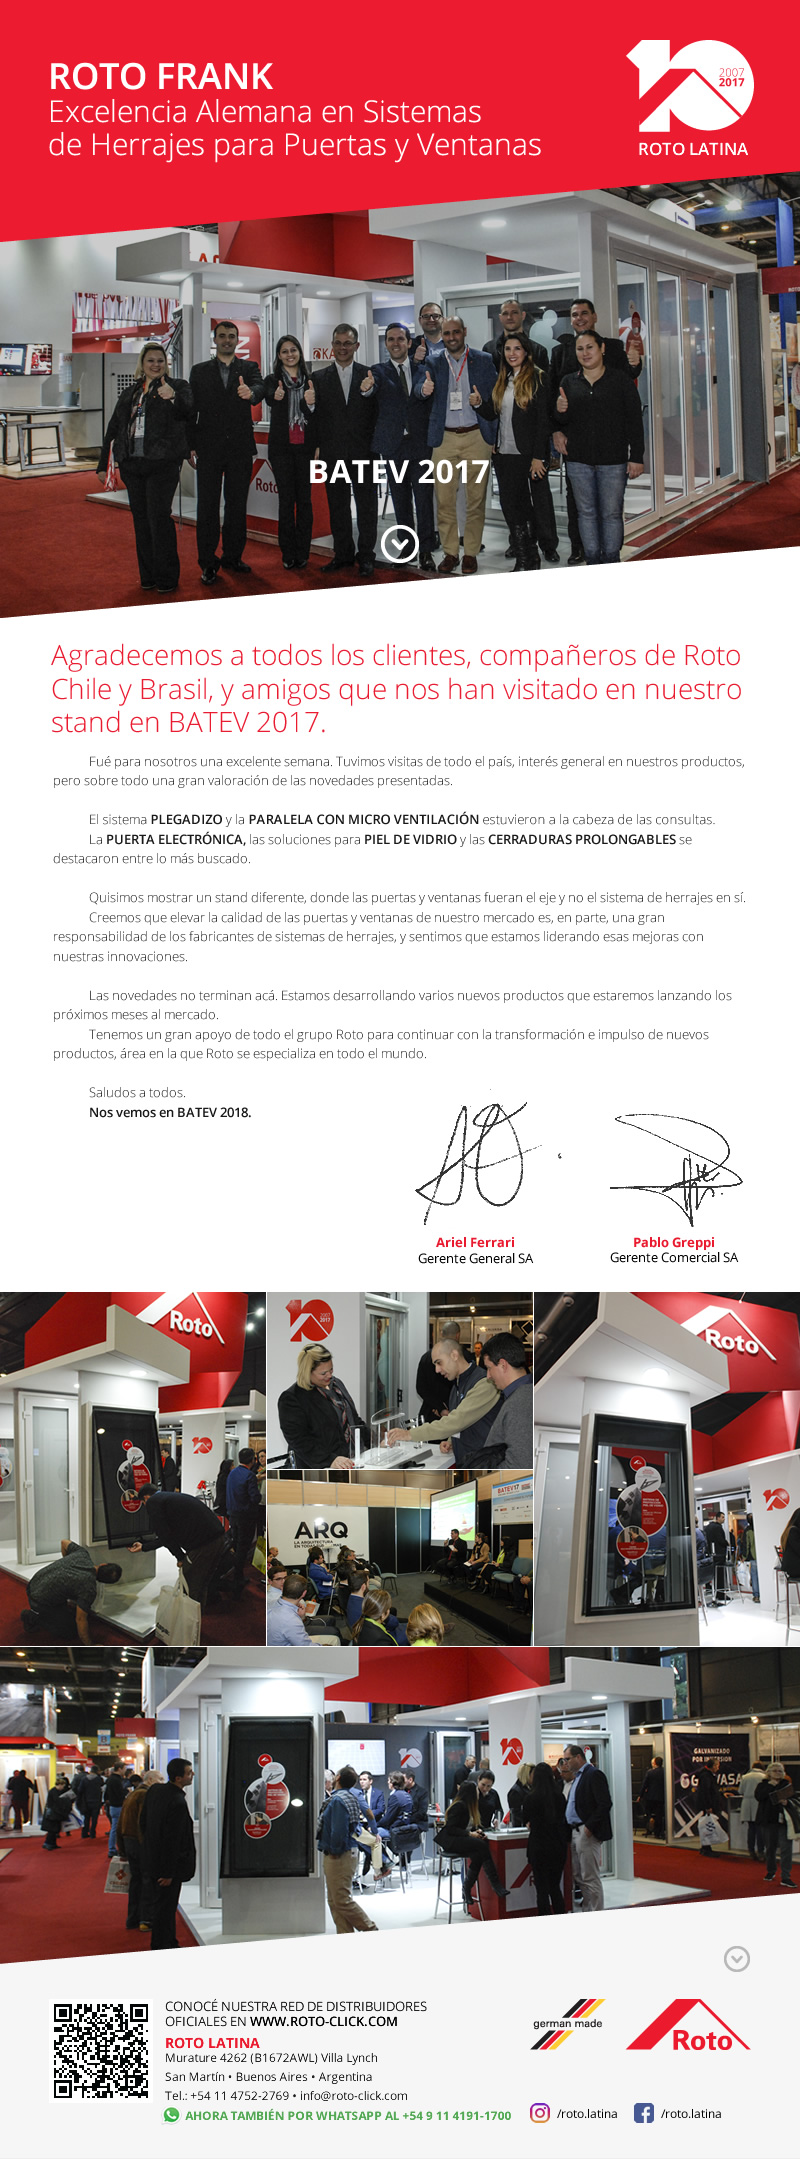         Agradecemos a todos los clientes, compañeros de Roto Chile y Brasil, y amigos que nos han visitado en nuestro stand en BATEV 2017.